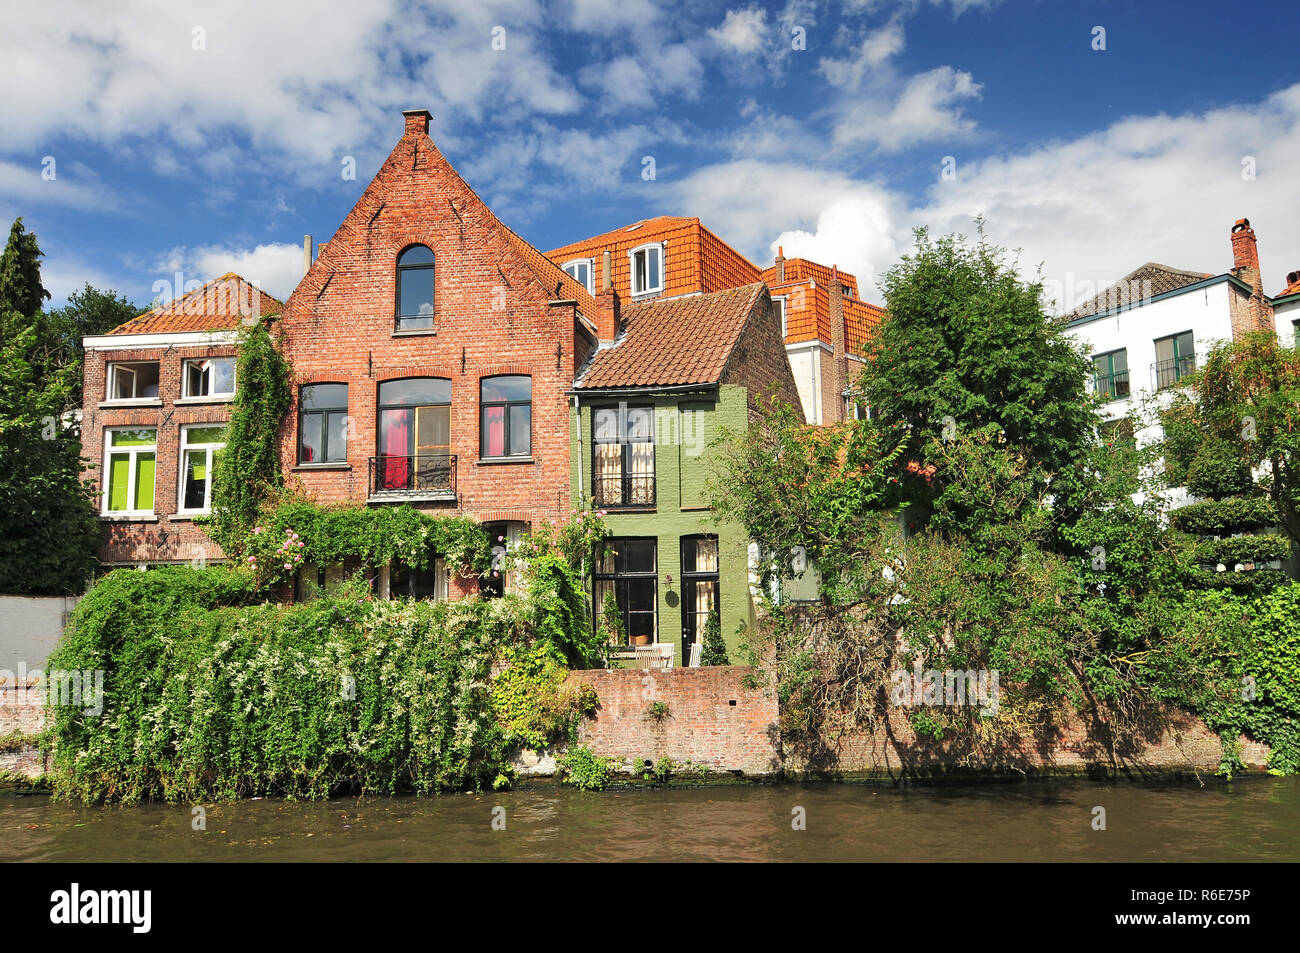 Kanal und alte Häuser in Brügge (Brugge) Belgien Stockfoto